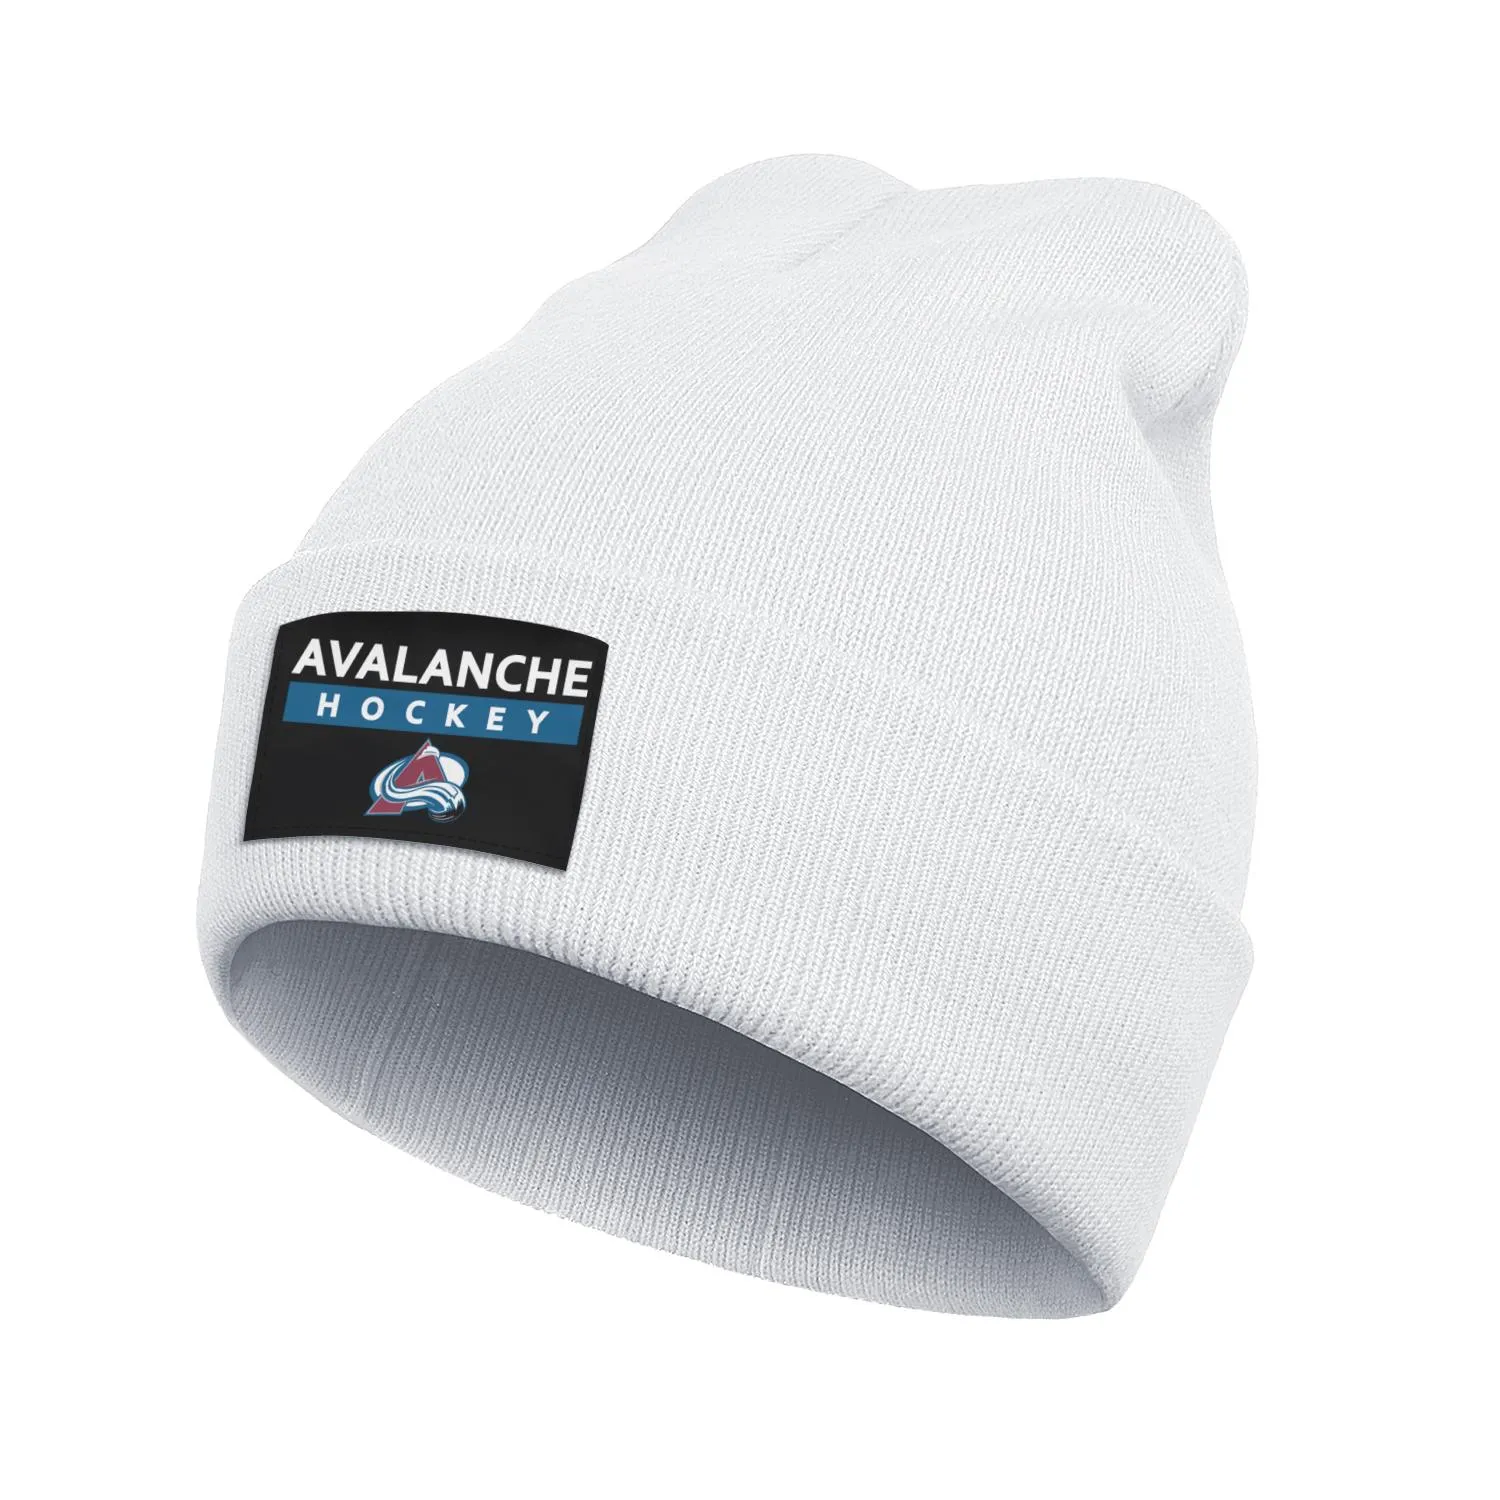 Colorado Avalanche Logo główne mężczyźni i kobiety czapka dziwaczna kreskówkowa kreskówka dzianinowa kapelusz Fine Knit 2018 Stanley Cup Playo203r